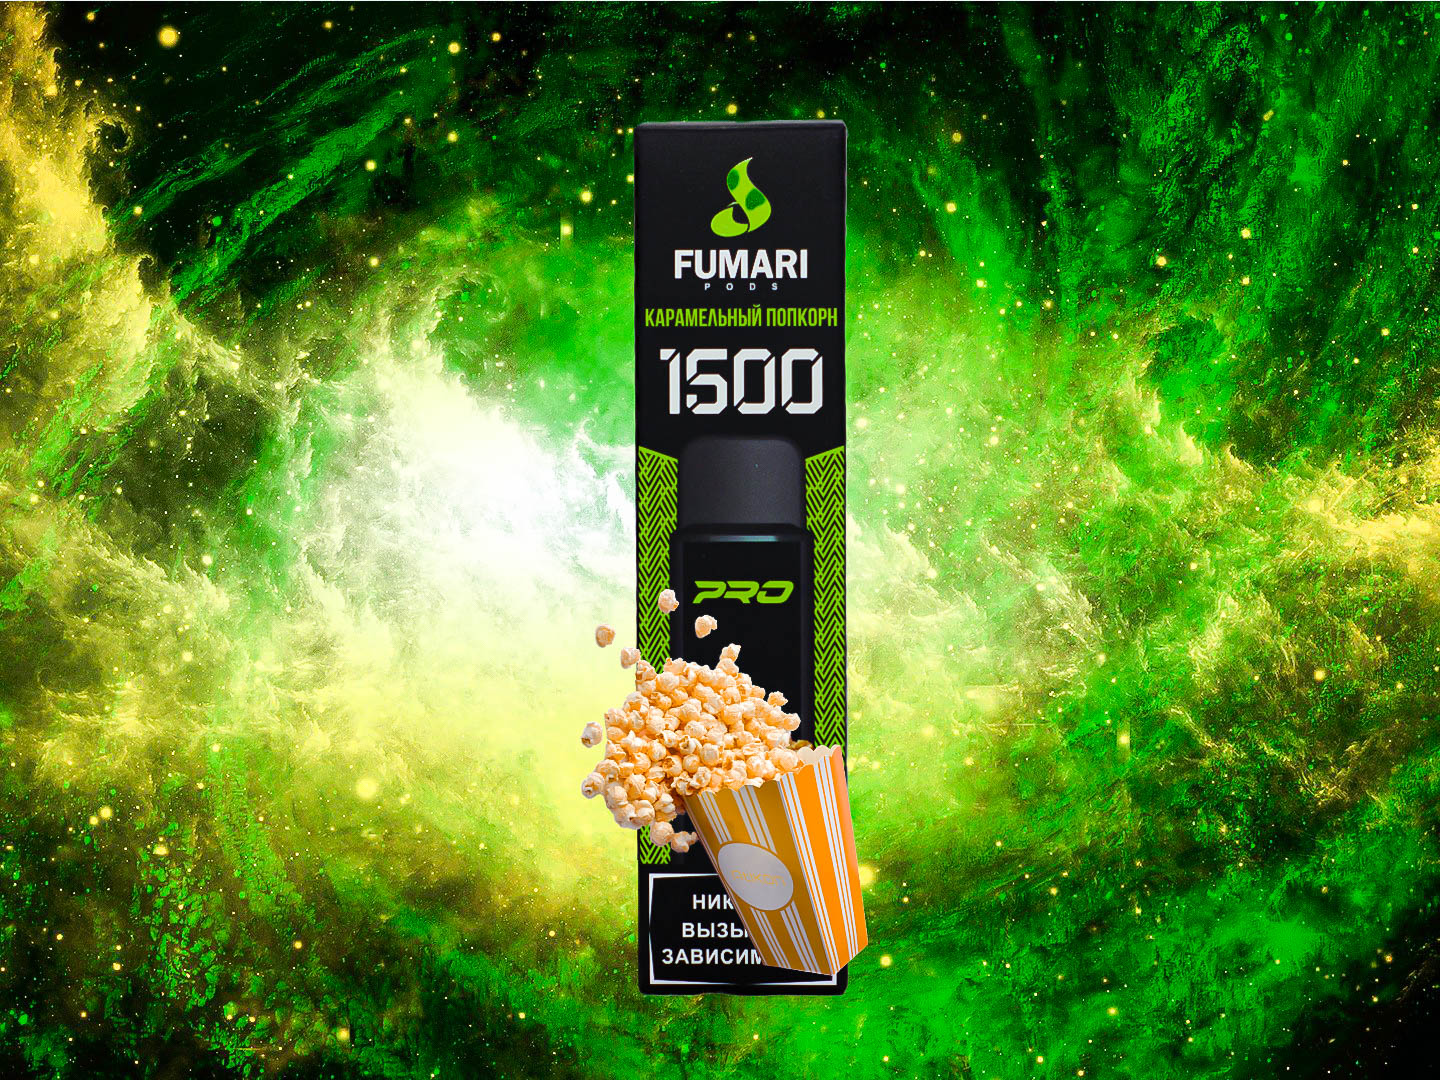 FUMARI 1500 / Карамельный попкорн